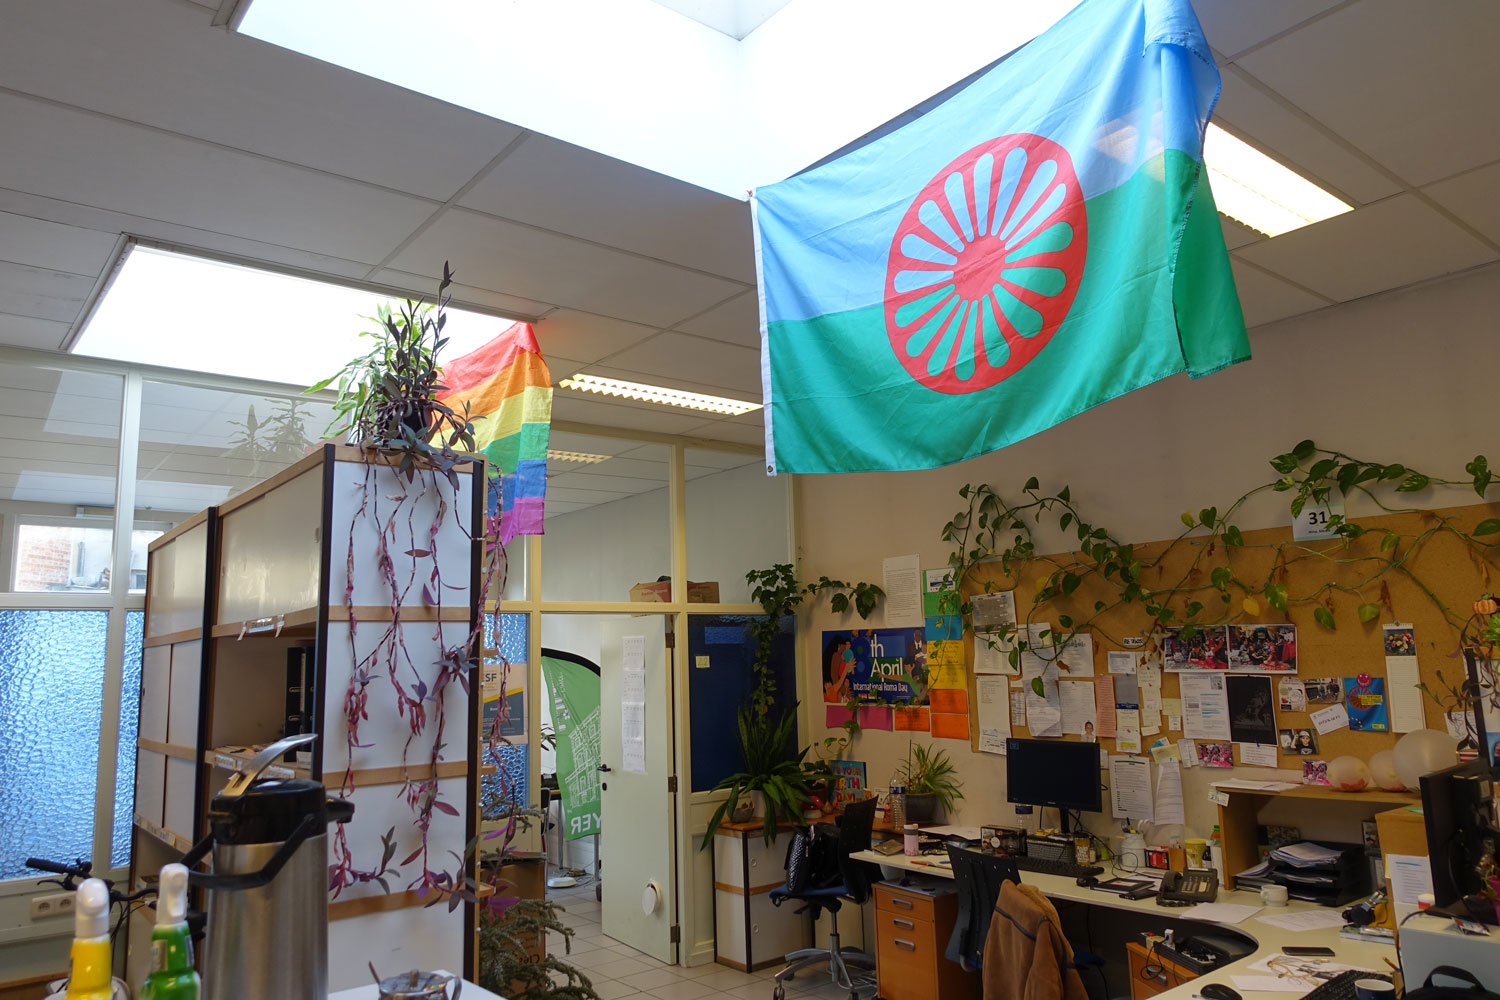 Le drapeau rom flotte au-dessus des bureaux © Globe Reporters